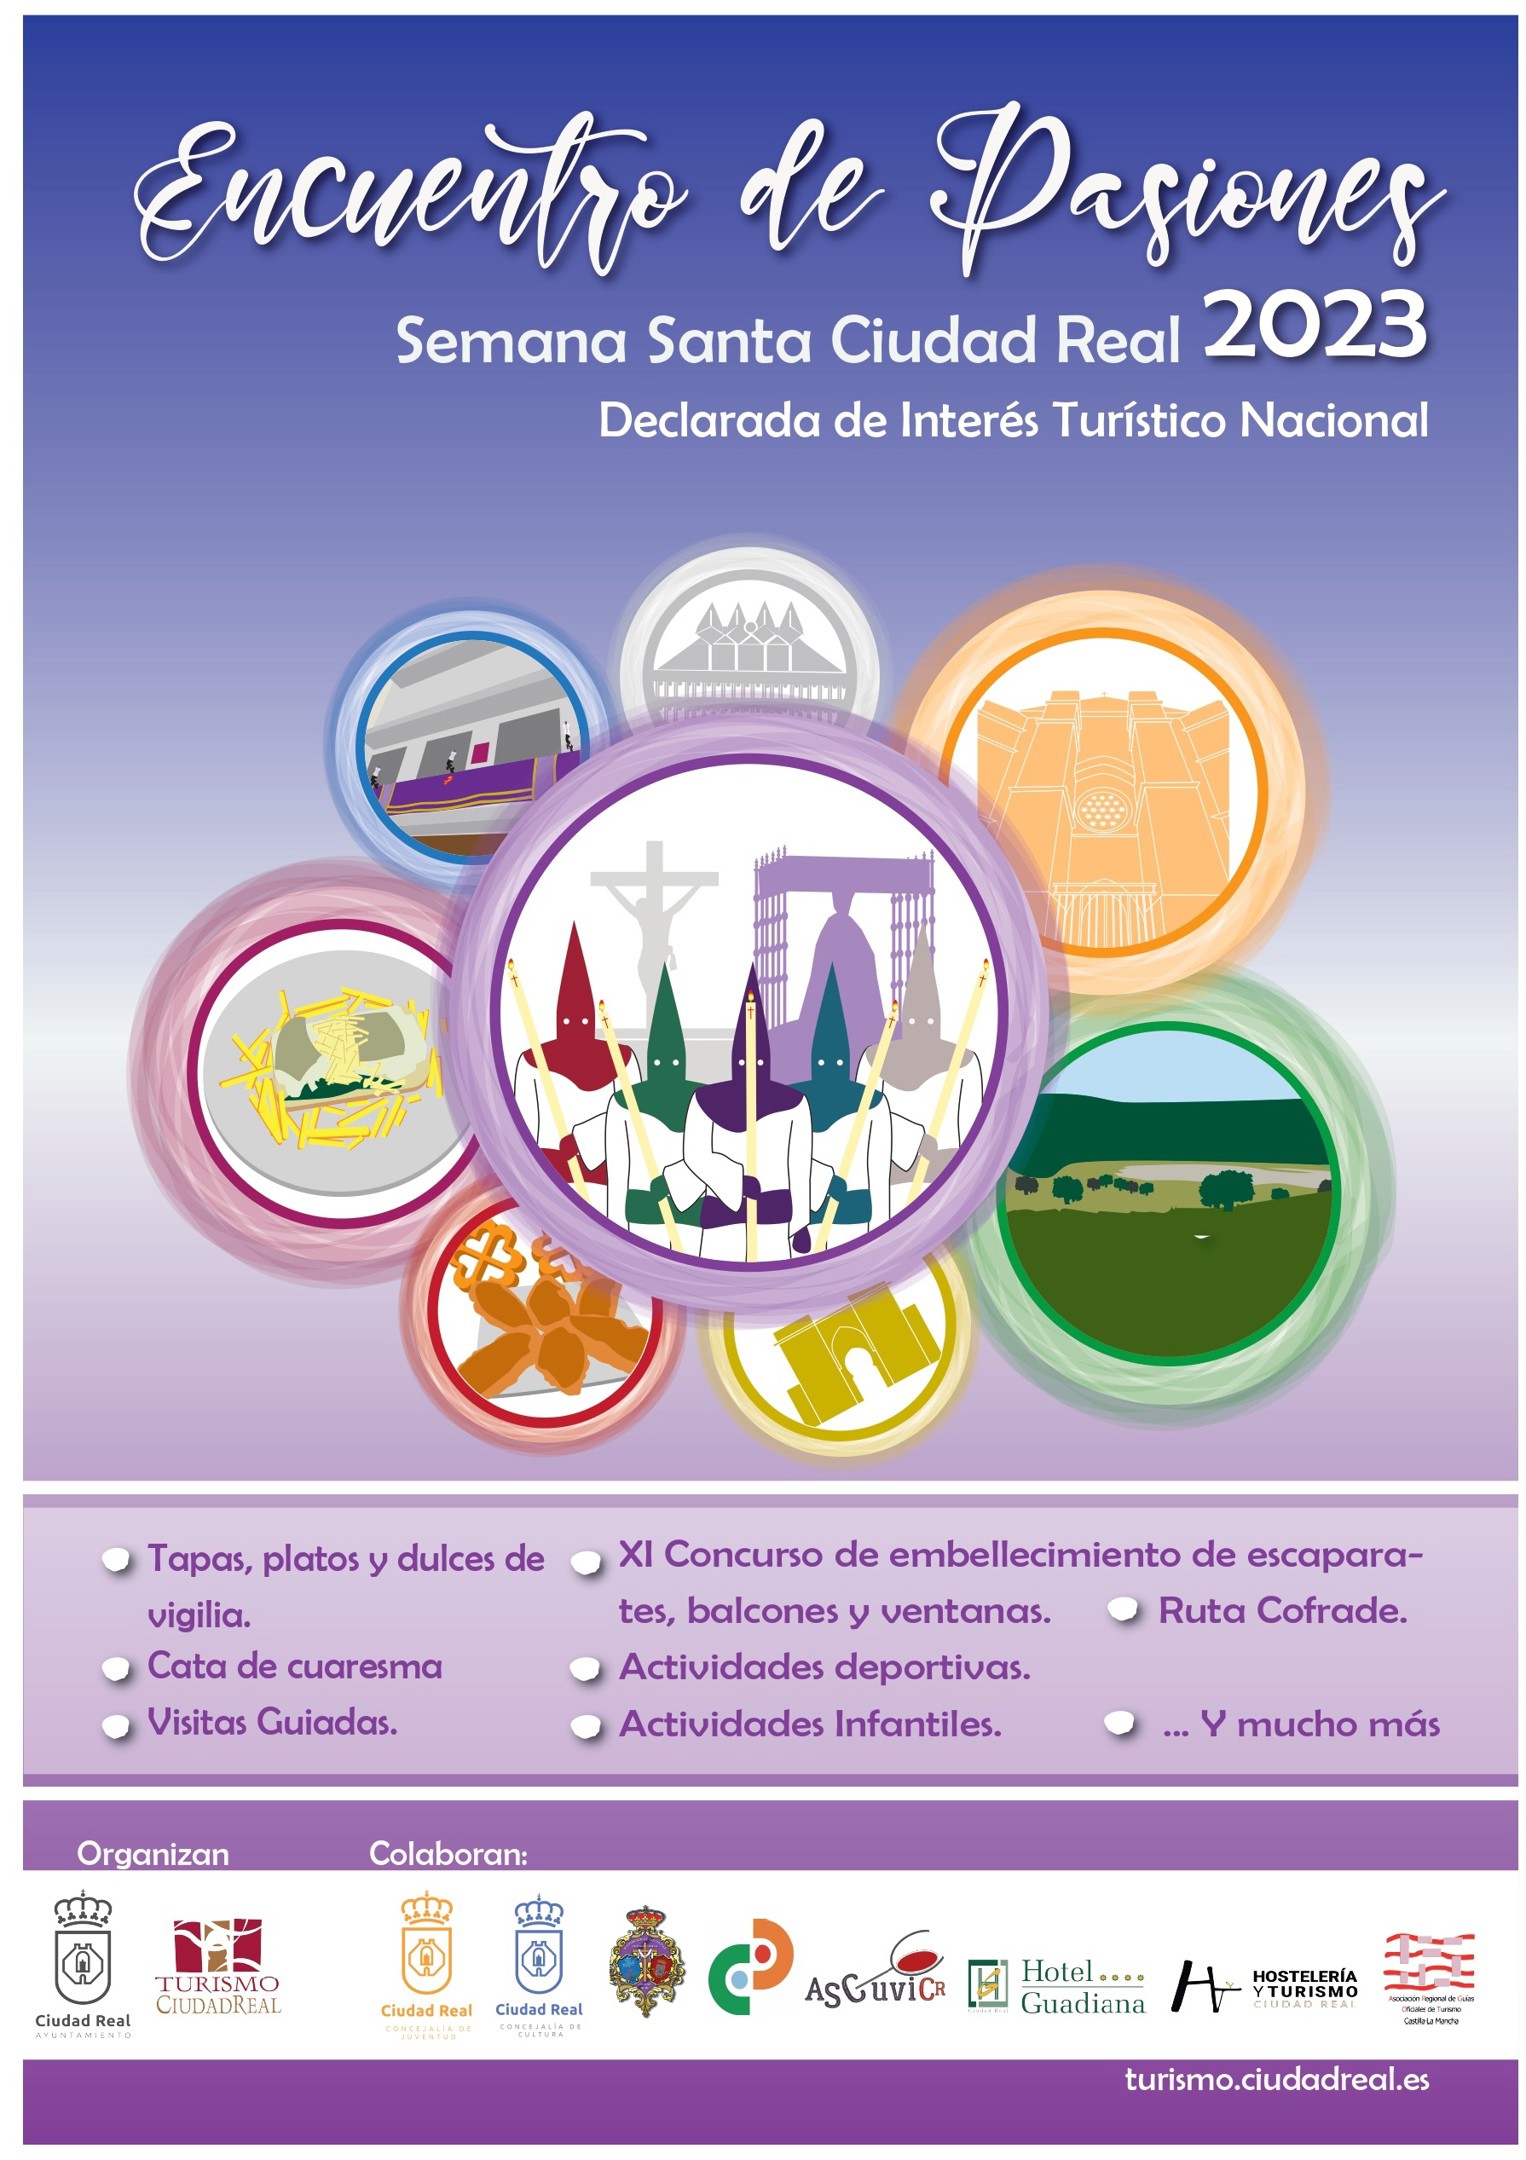 Cartel del Encuentro de Pasiones 2023 de la Semana Santa de Ciudad Real